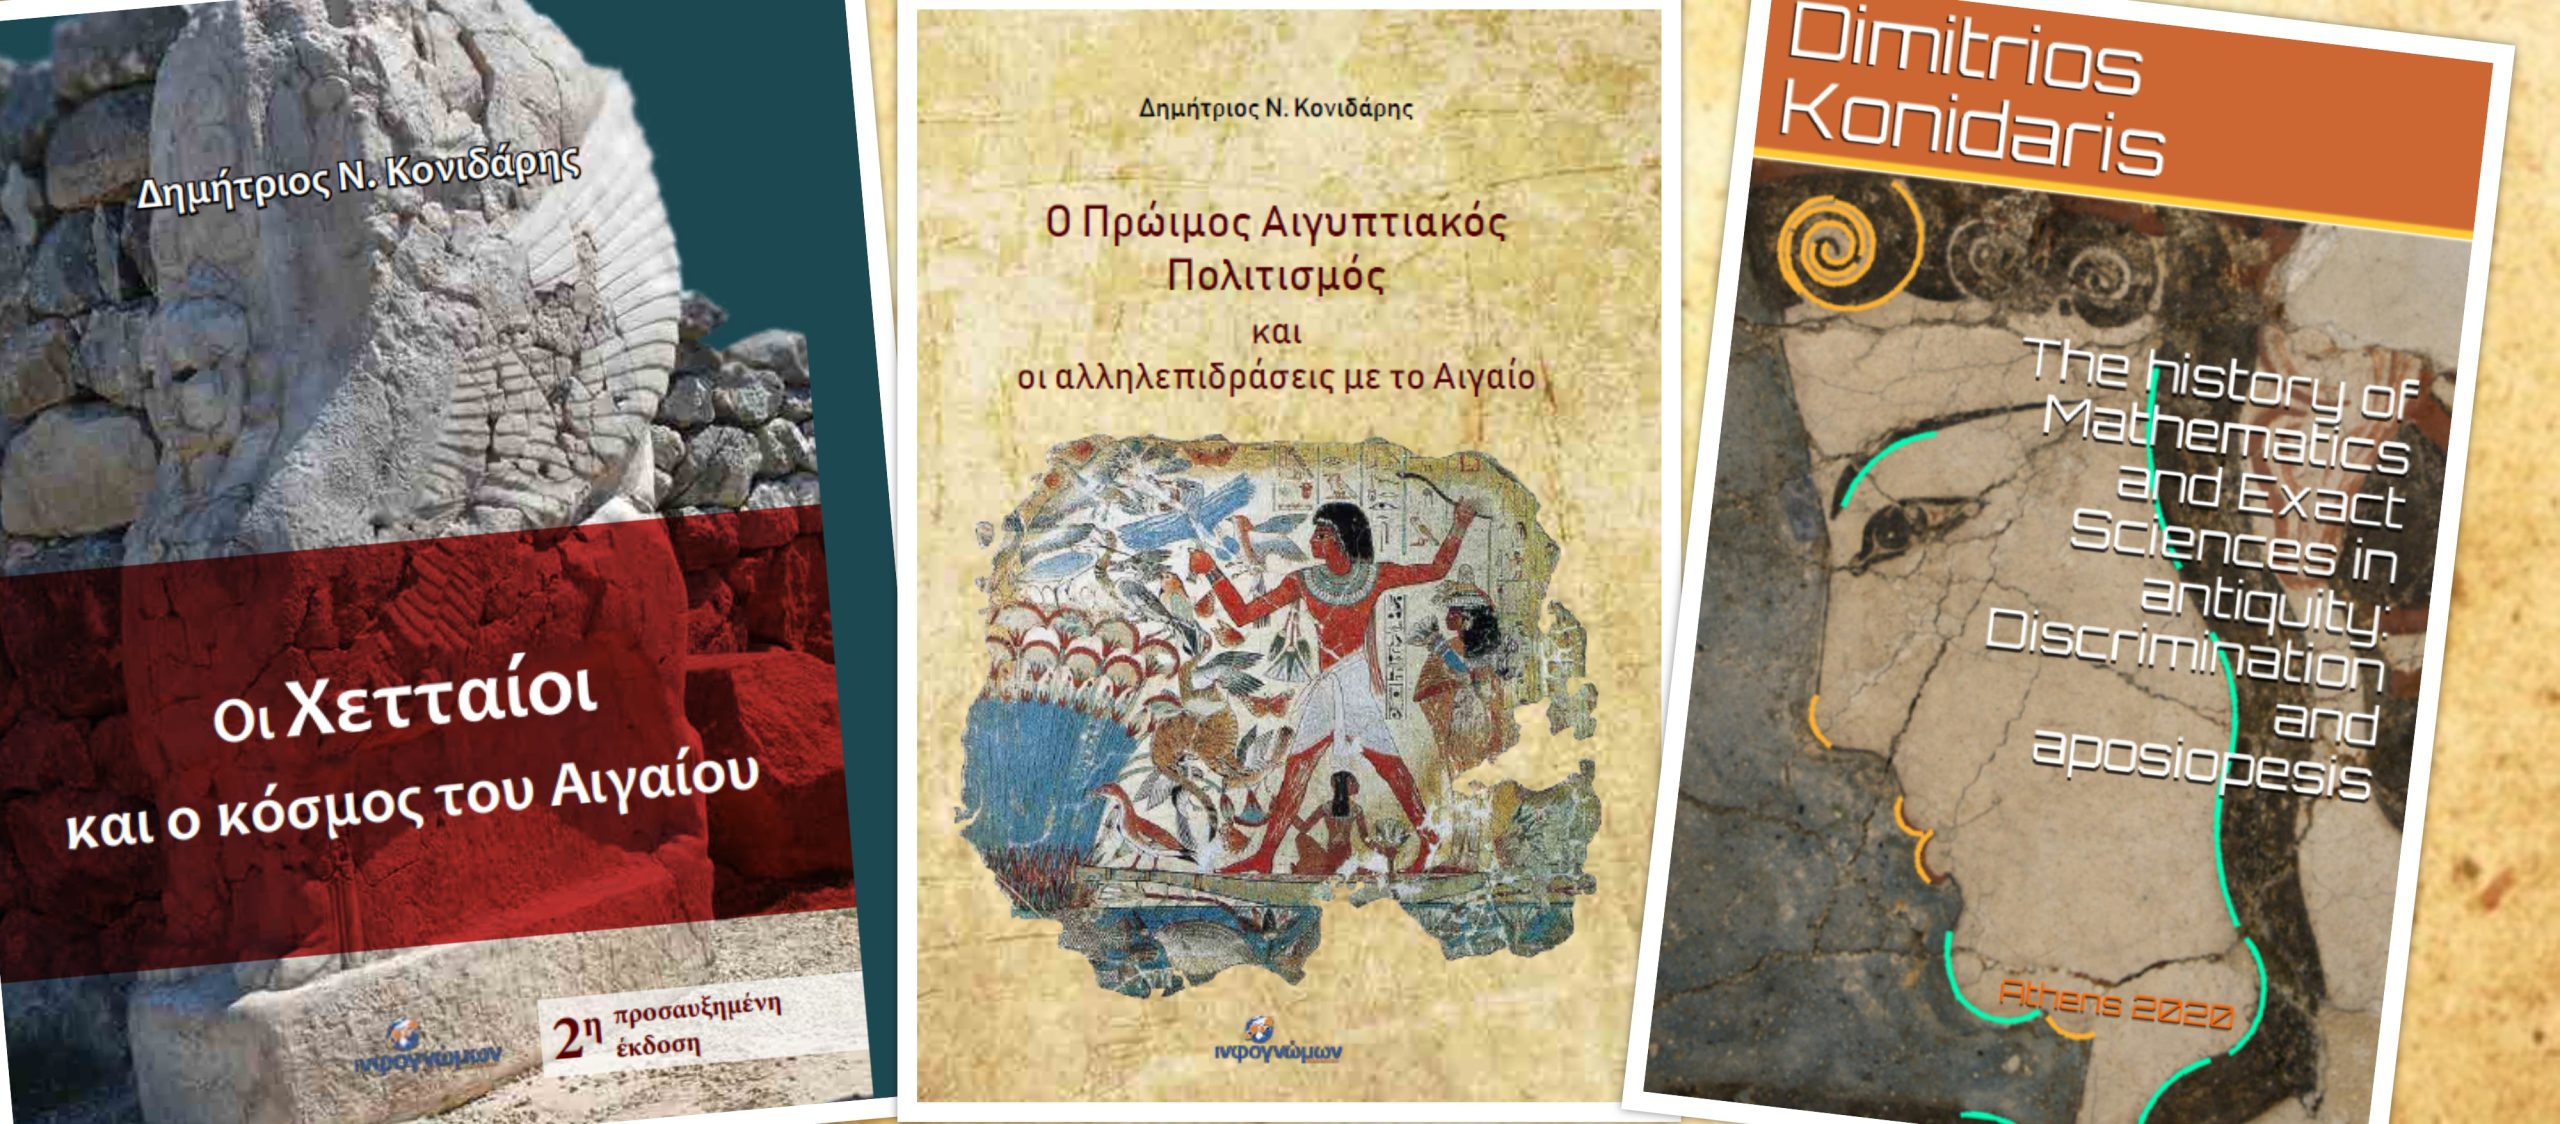 Δημήτριος Κονιδάρης: Μια σειρά βιβλίων που δεν πρέπει να λείπει από καμία βιβλιοθήκη